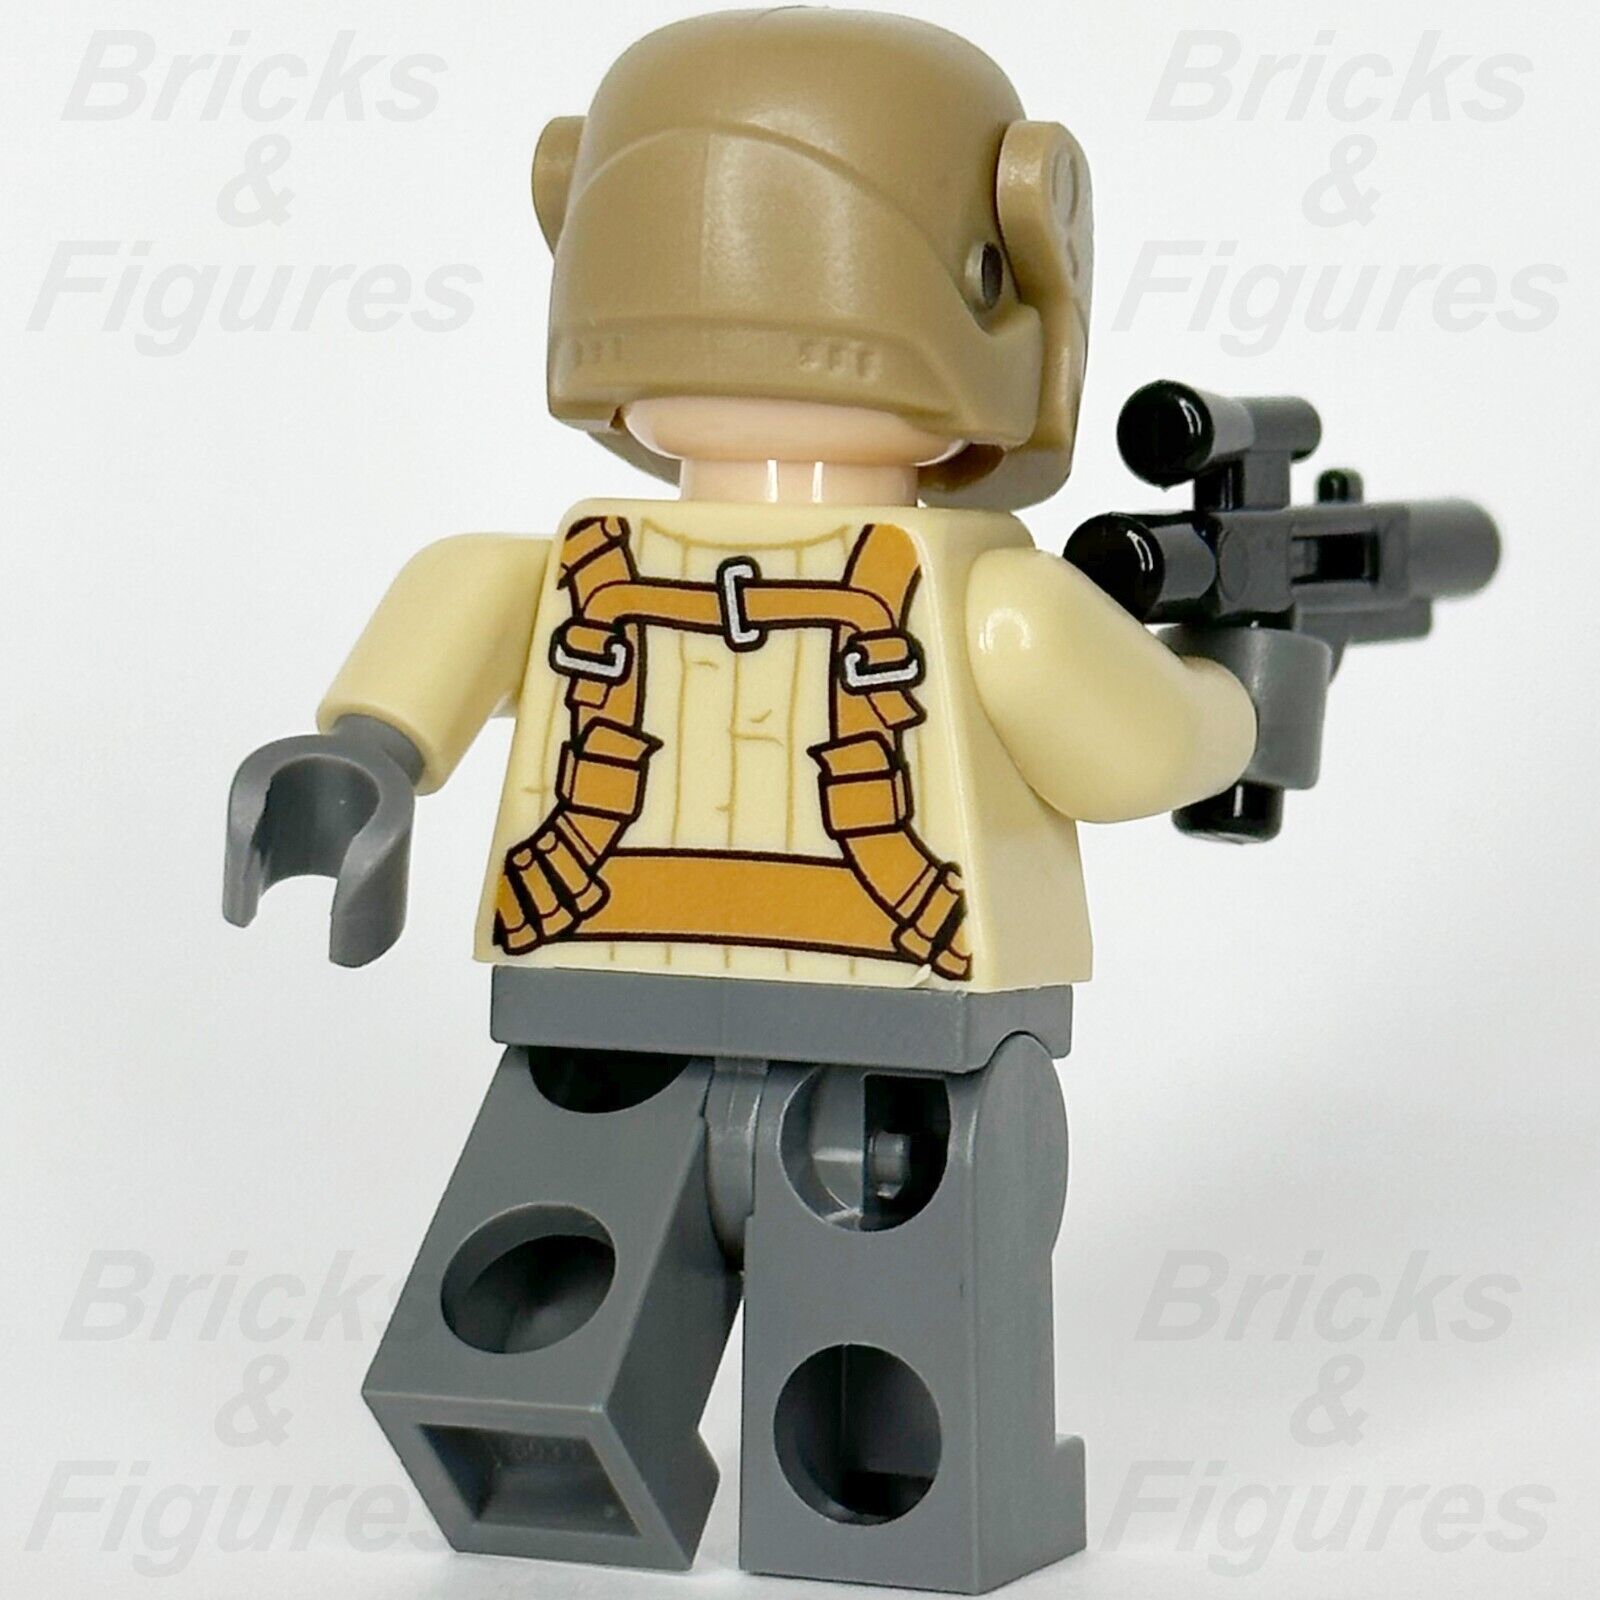 LEGO Star Wars Resistance Trooper Minifigure Tan Jacket Moustache 75131 sw0696 3